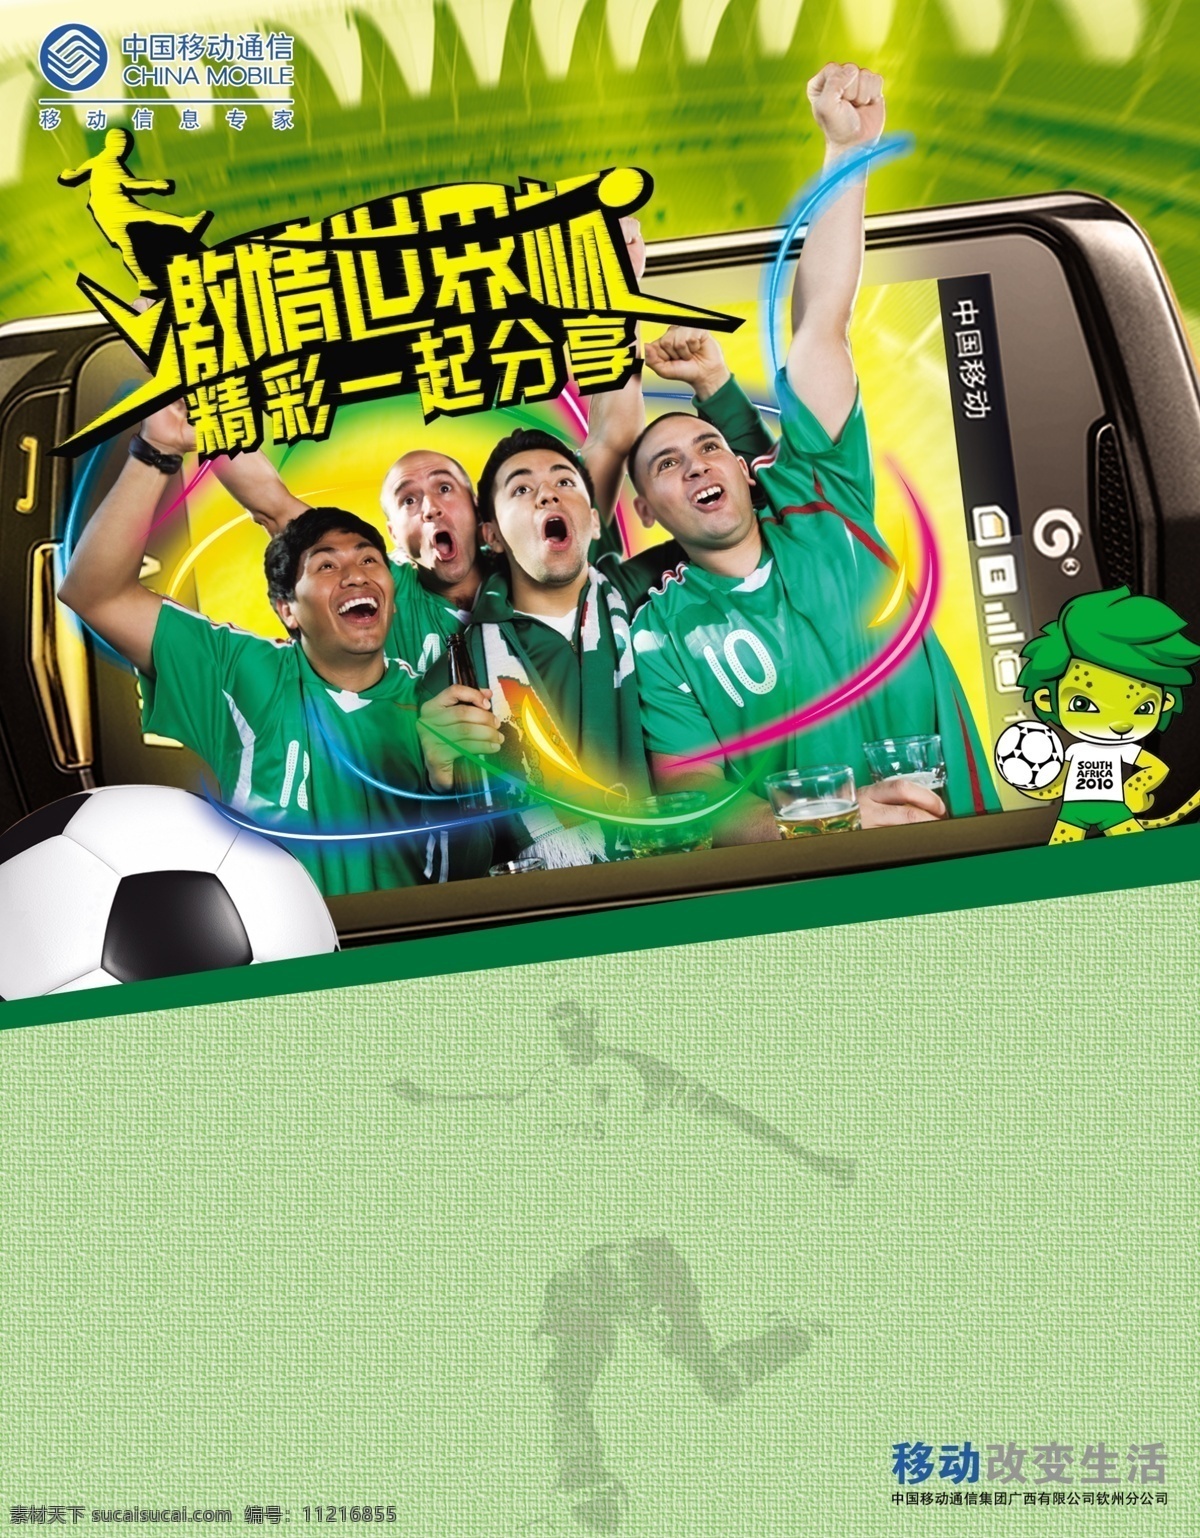 底纹 广告设计模板 激情世界杯 劲爆 手机视频 源文件 中国移动海报 精彩一起分享 加油喝彩 彩条光线 足球 其他海报设计